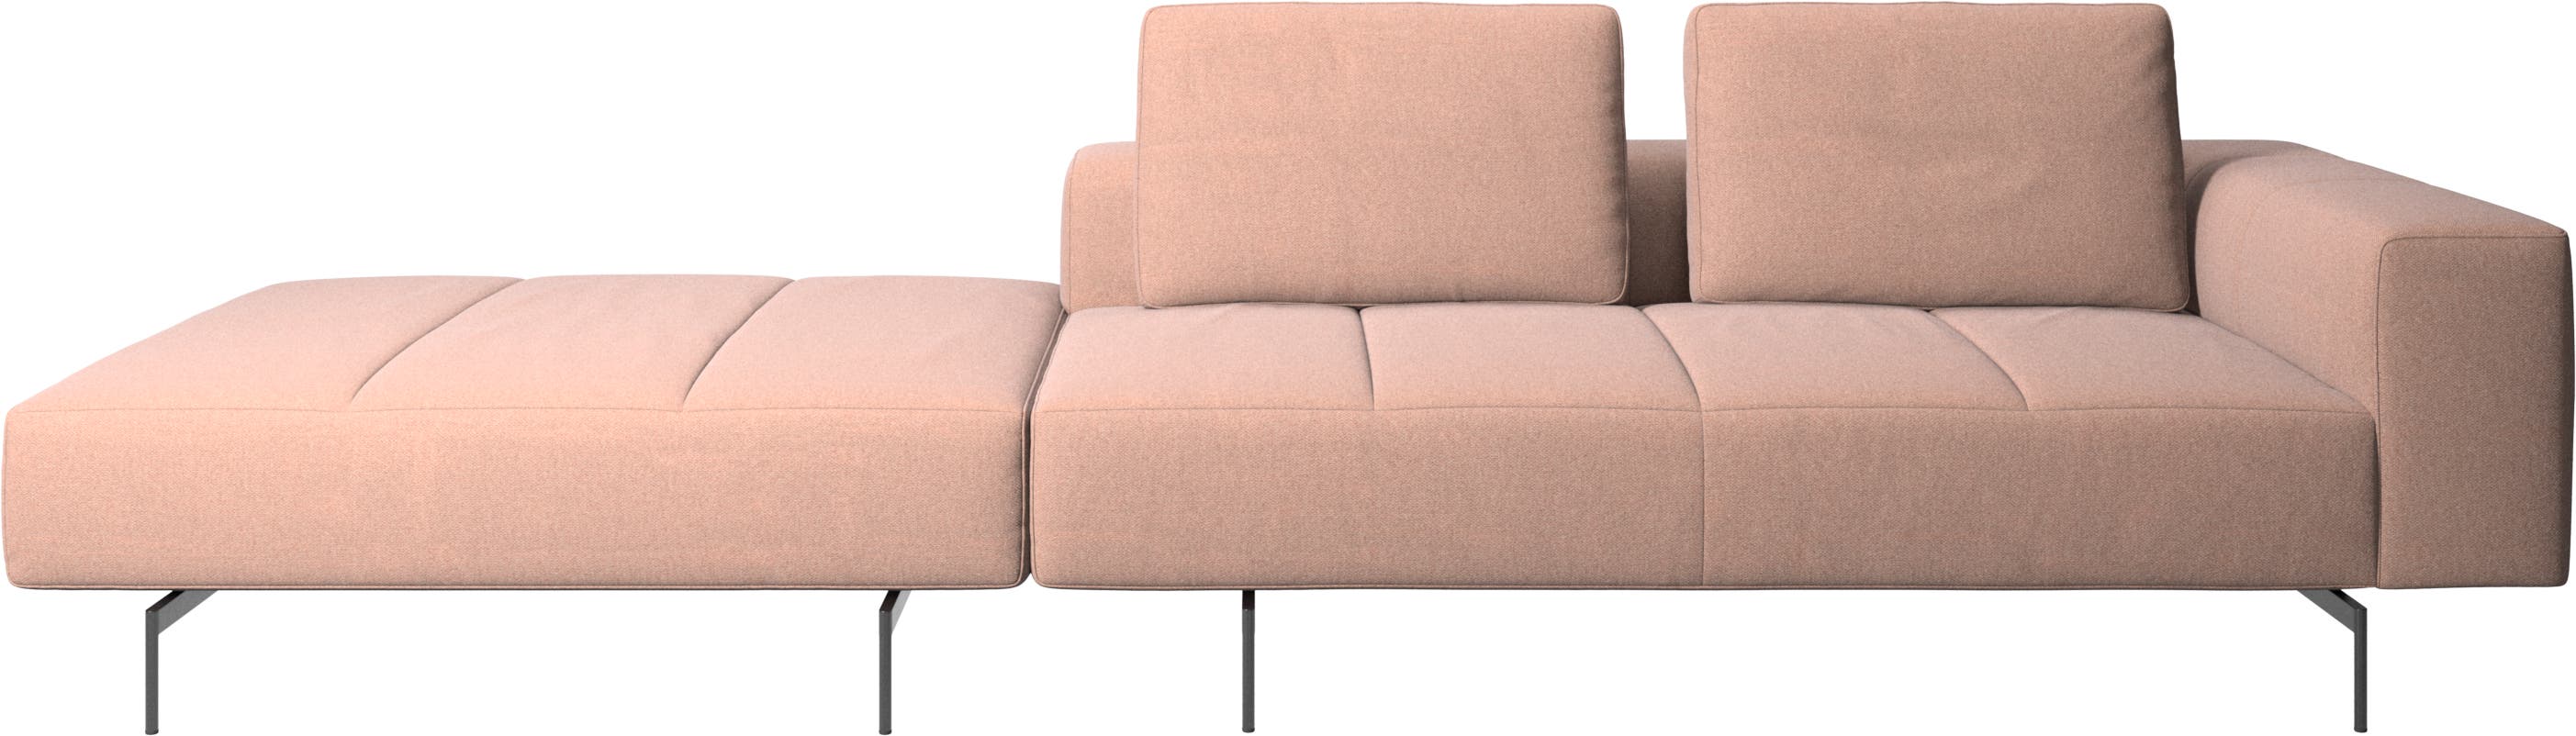 Amsterdam-sohva, rahi vasemmalla